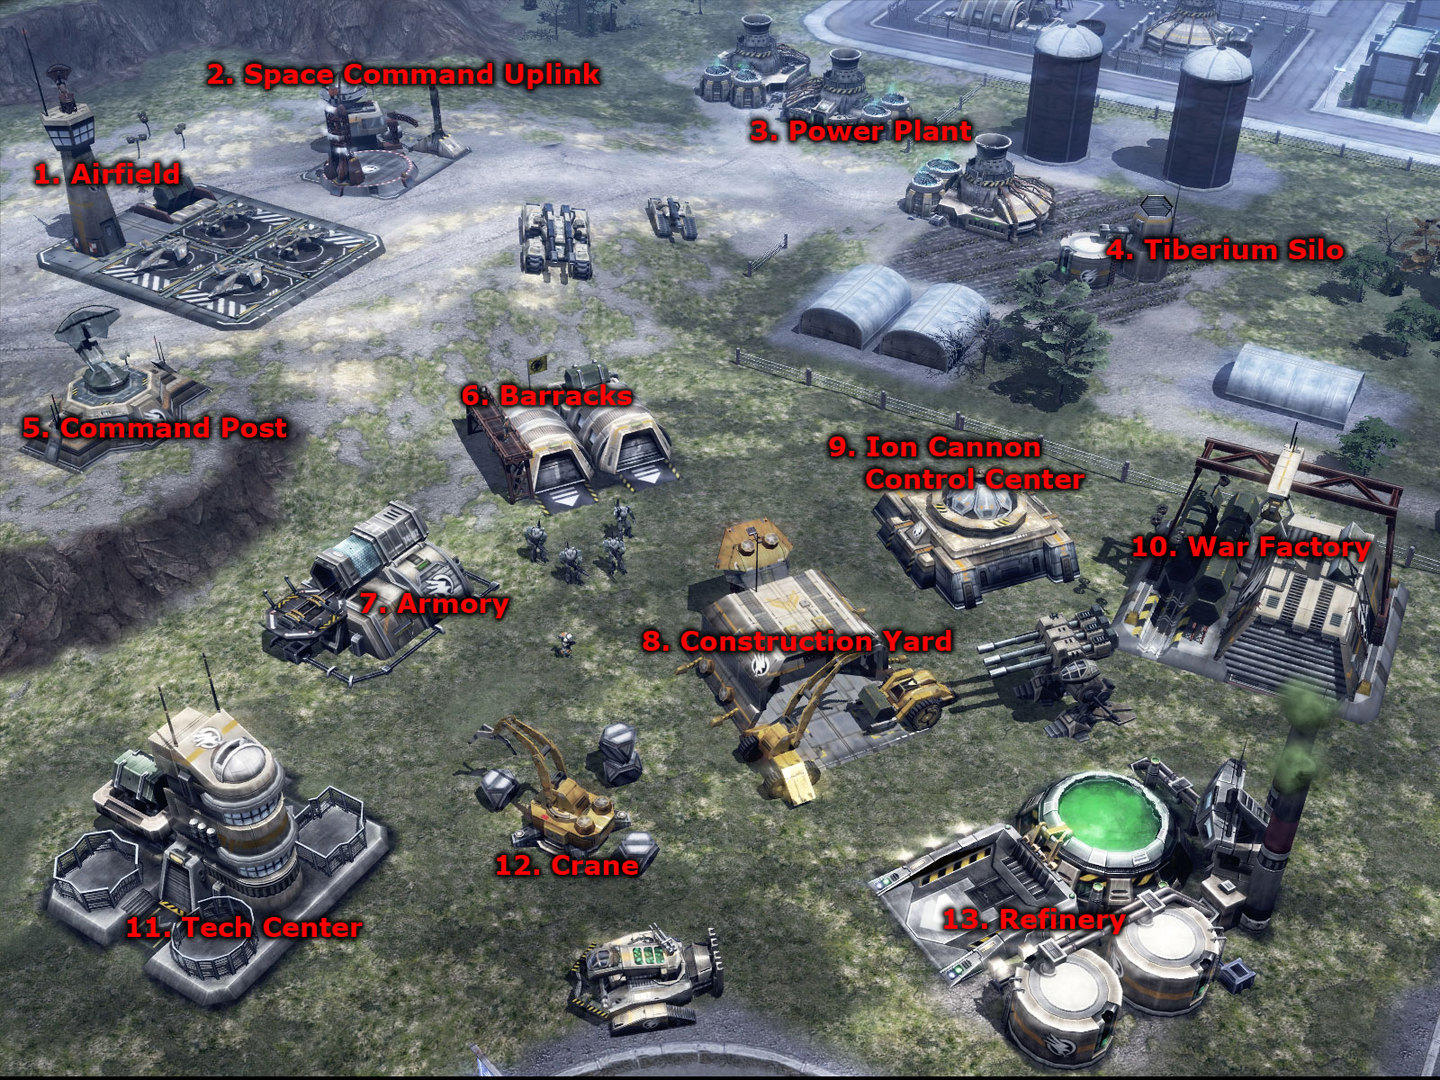 Command & Conquer™ 3 Tiberium Warsのキャプチャ